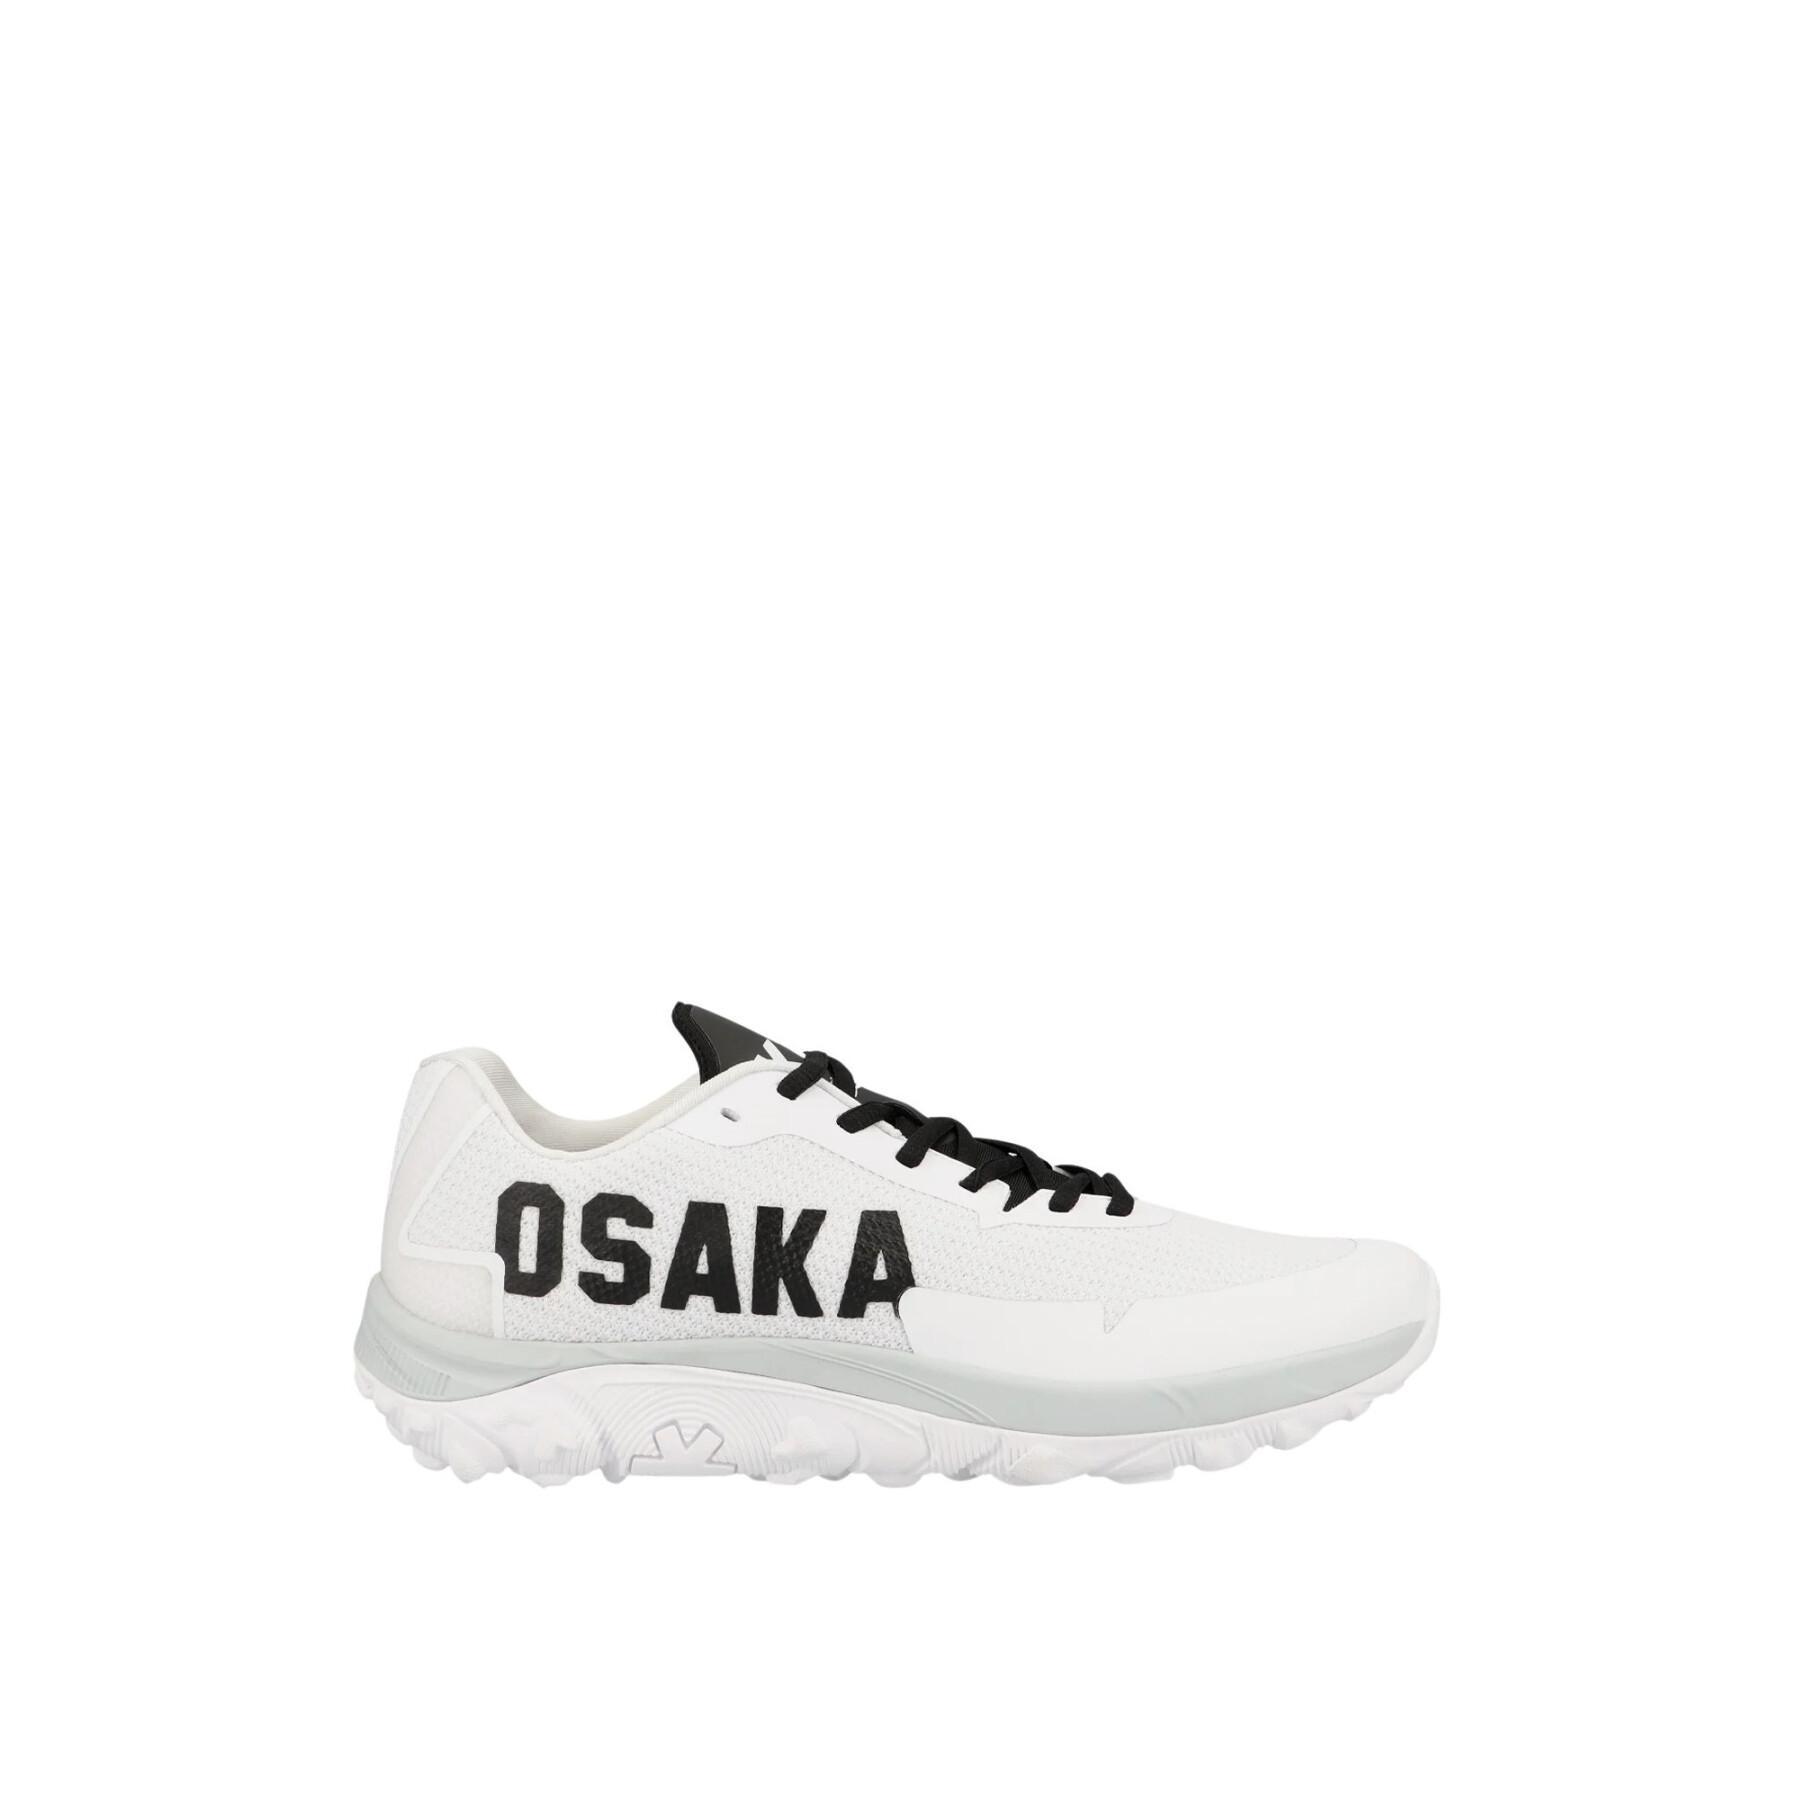 Zapatos Osaka Kai MK1